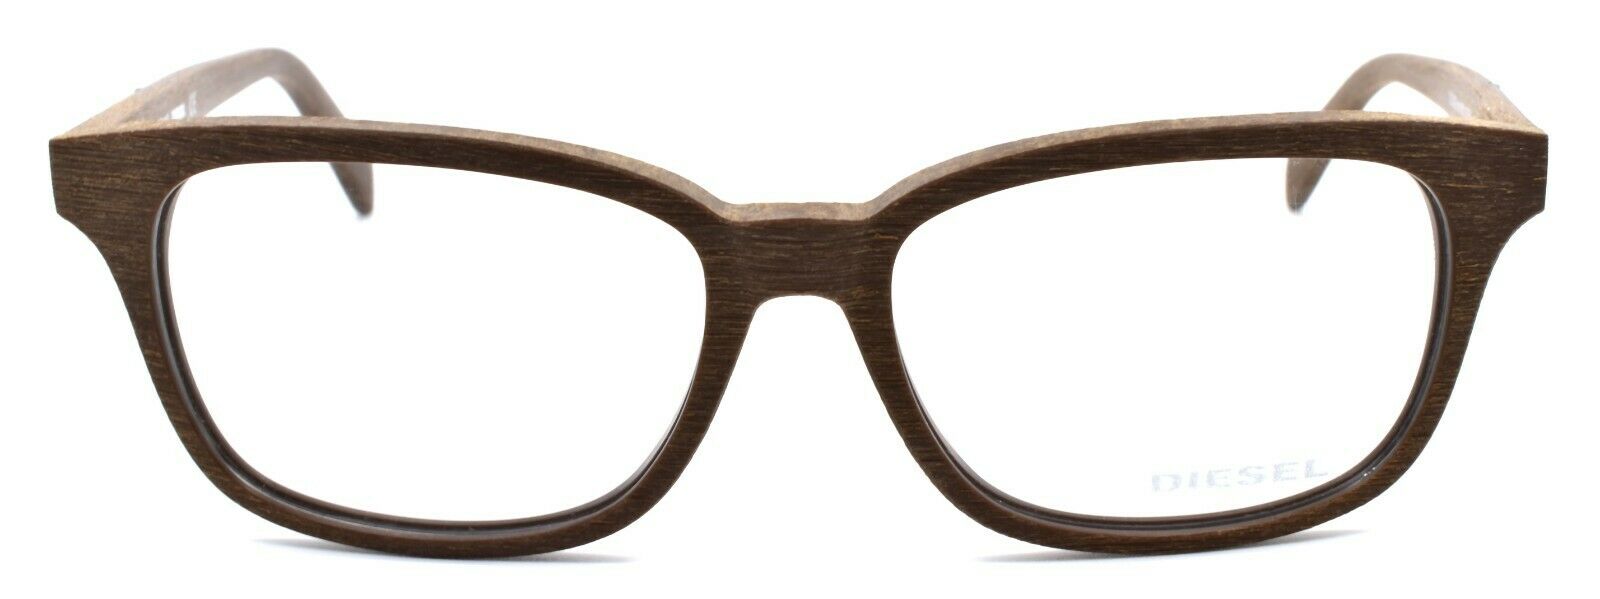 2-Diesel DL5129 050 Unisex Eyeglasses Frames 52-15-145 Brown Wood Grain Texture-664689669332-IKSpecs